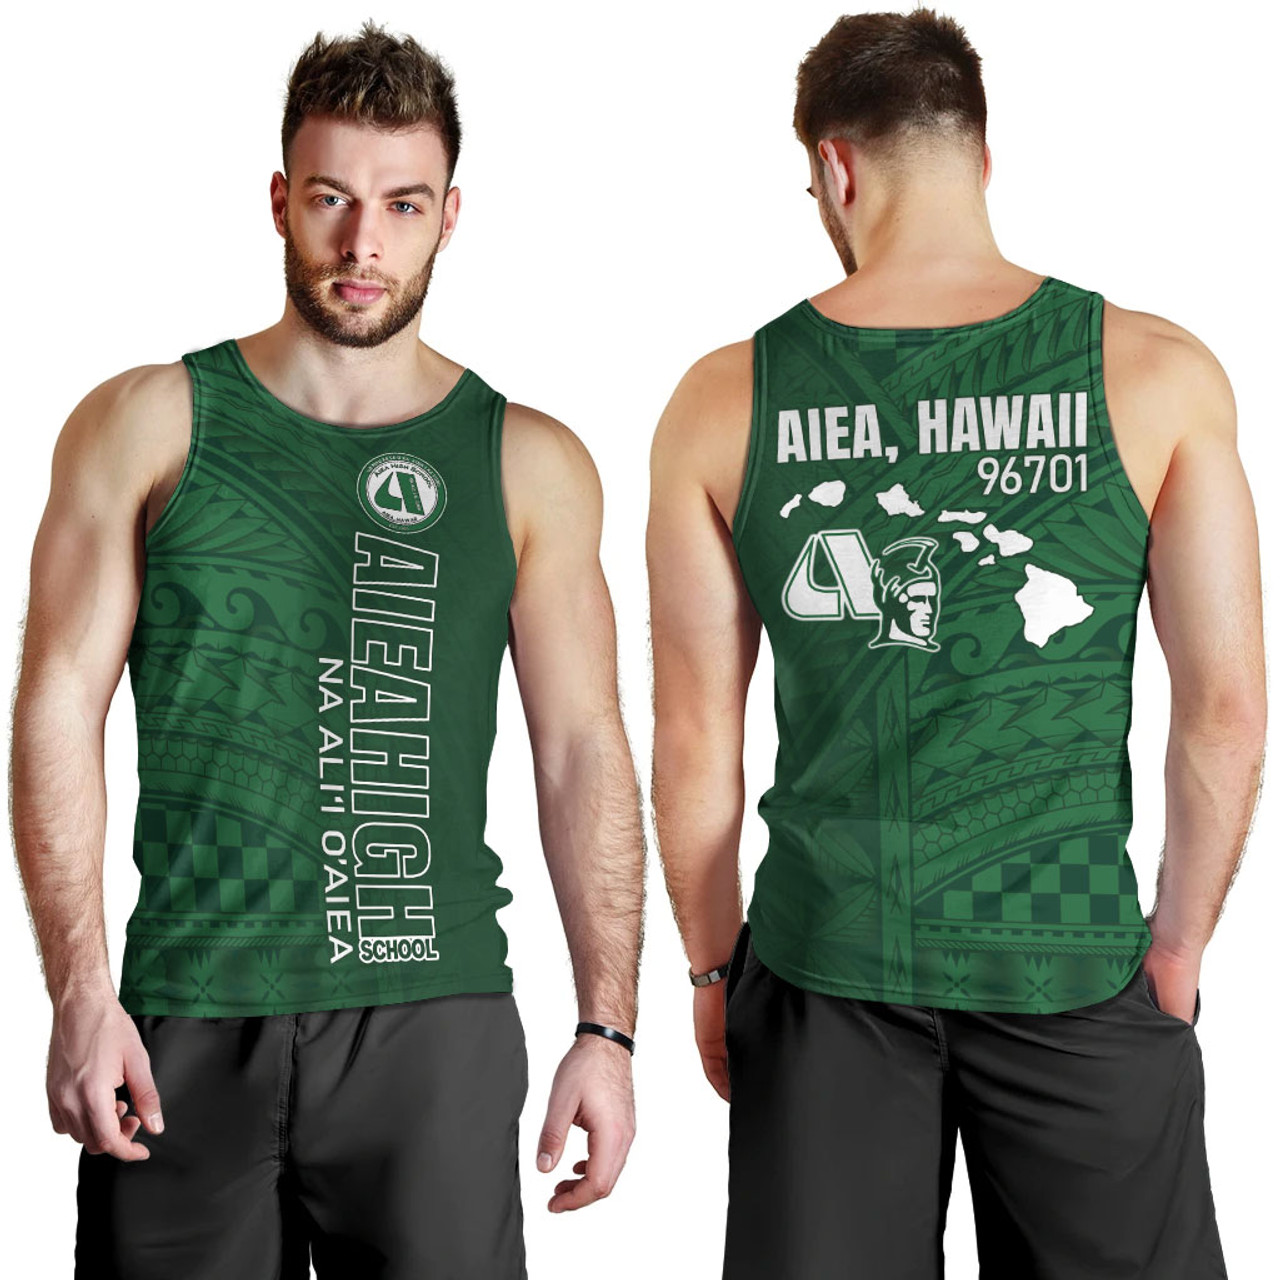 Hawaii Aiea High School Tank Top - Na Ali'i O'aiea Hawaii Patterns